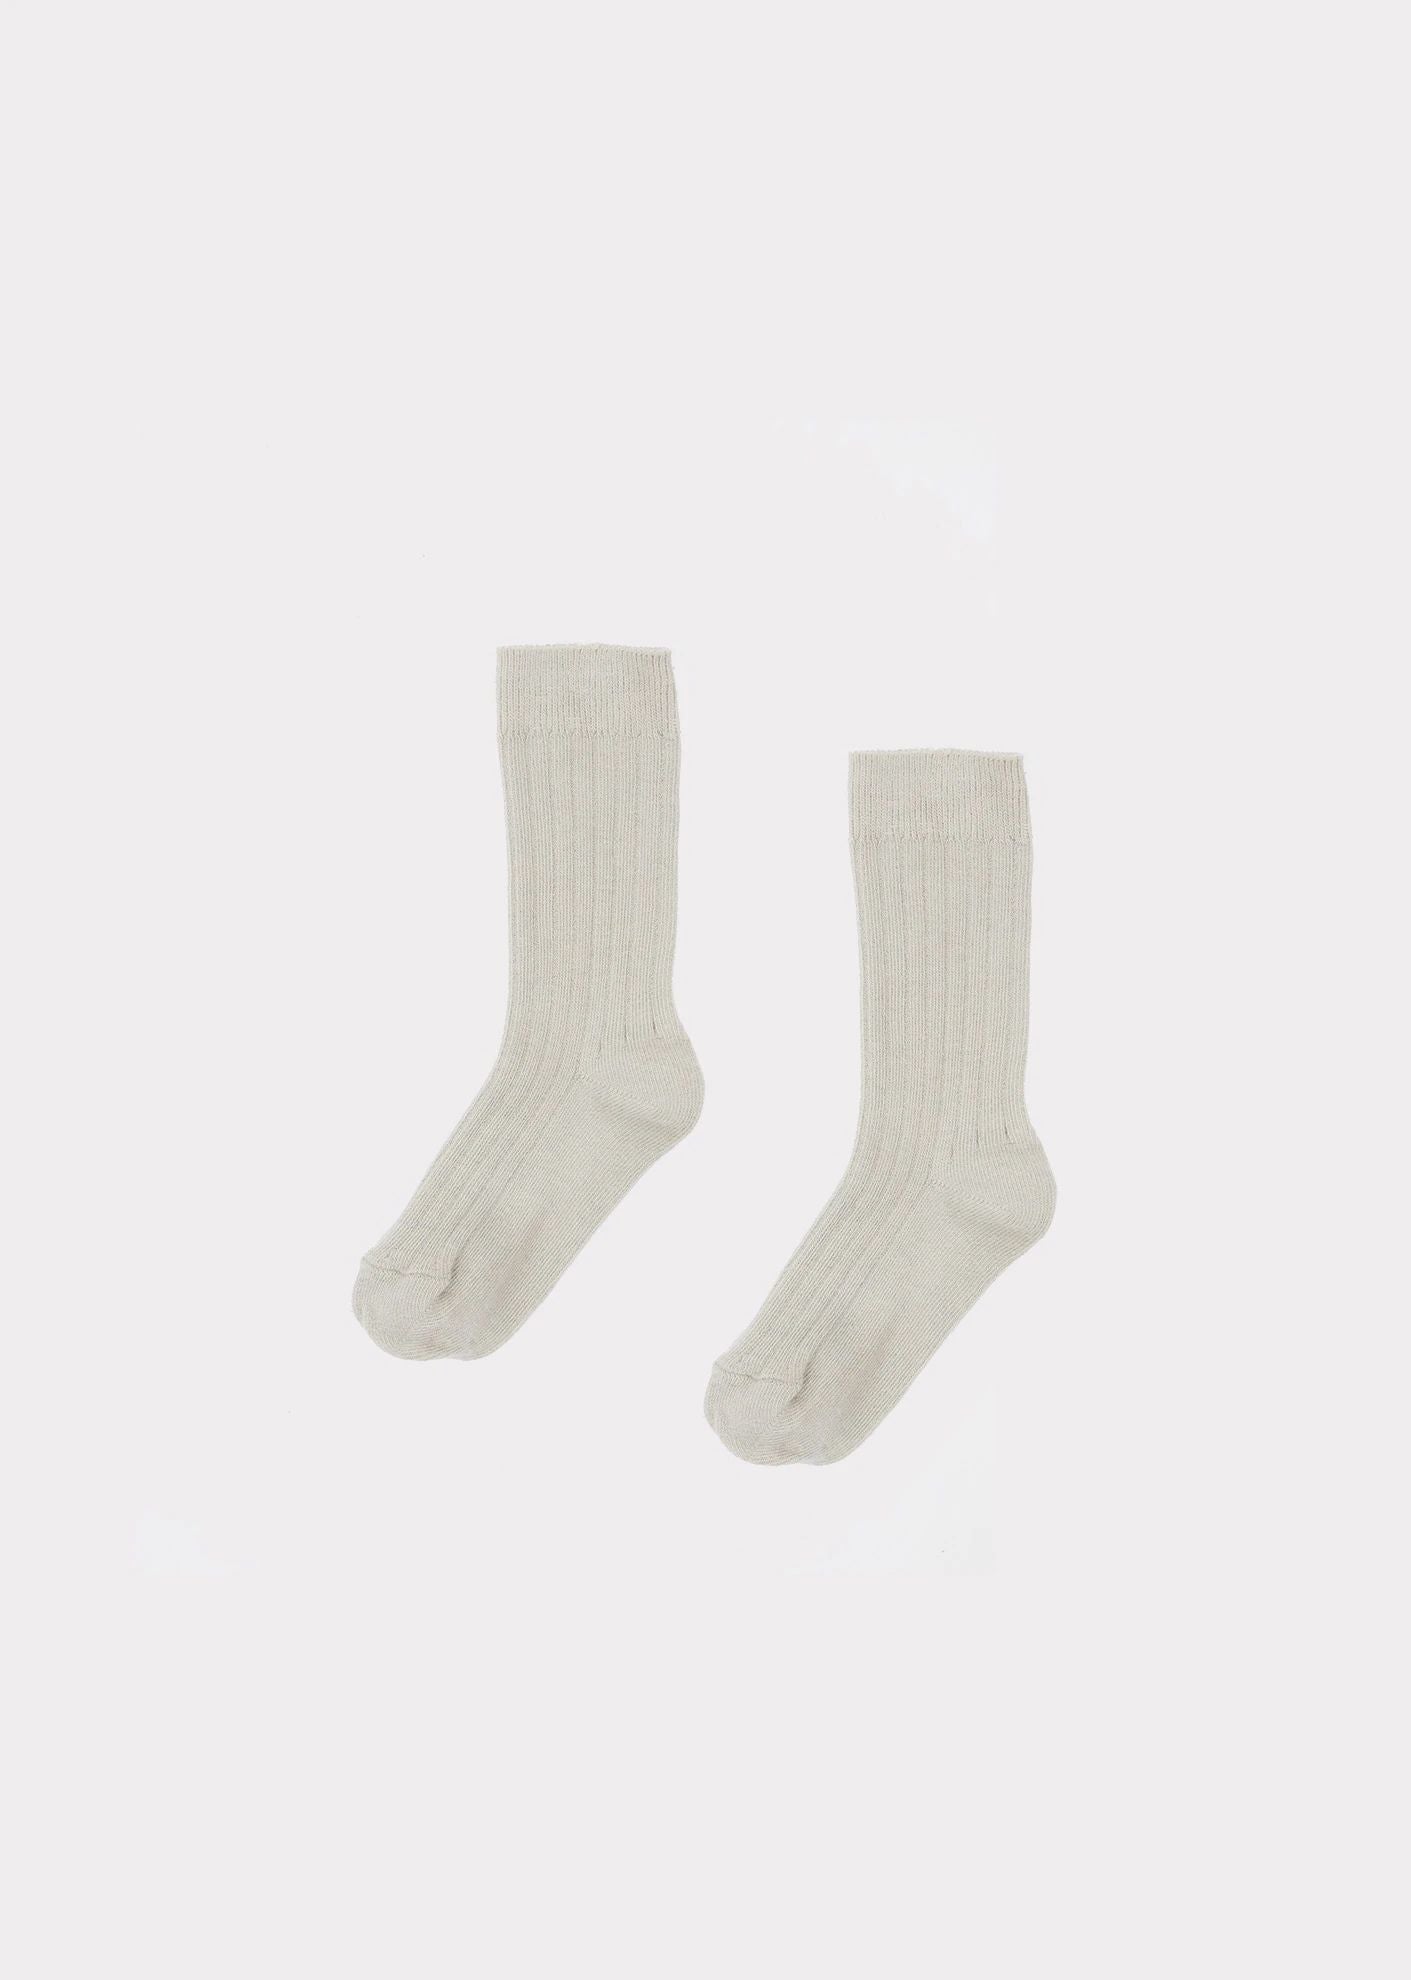 Boys & Girls White Cotton Socks